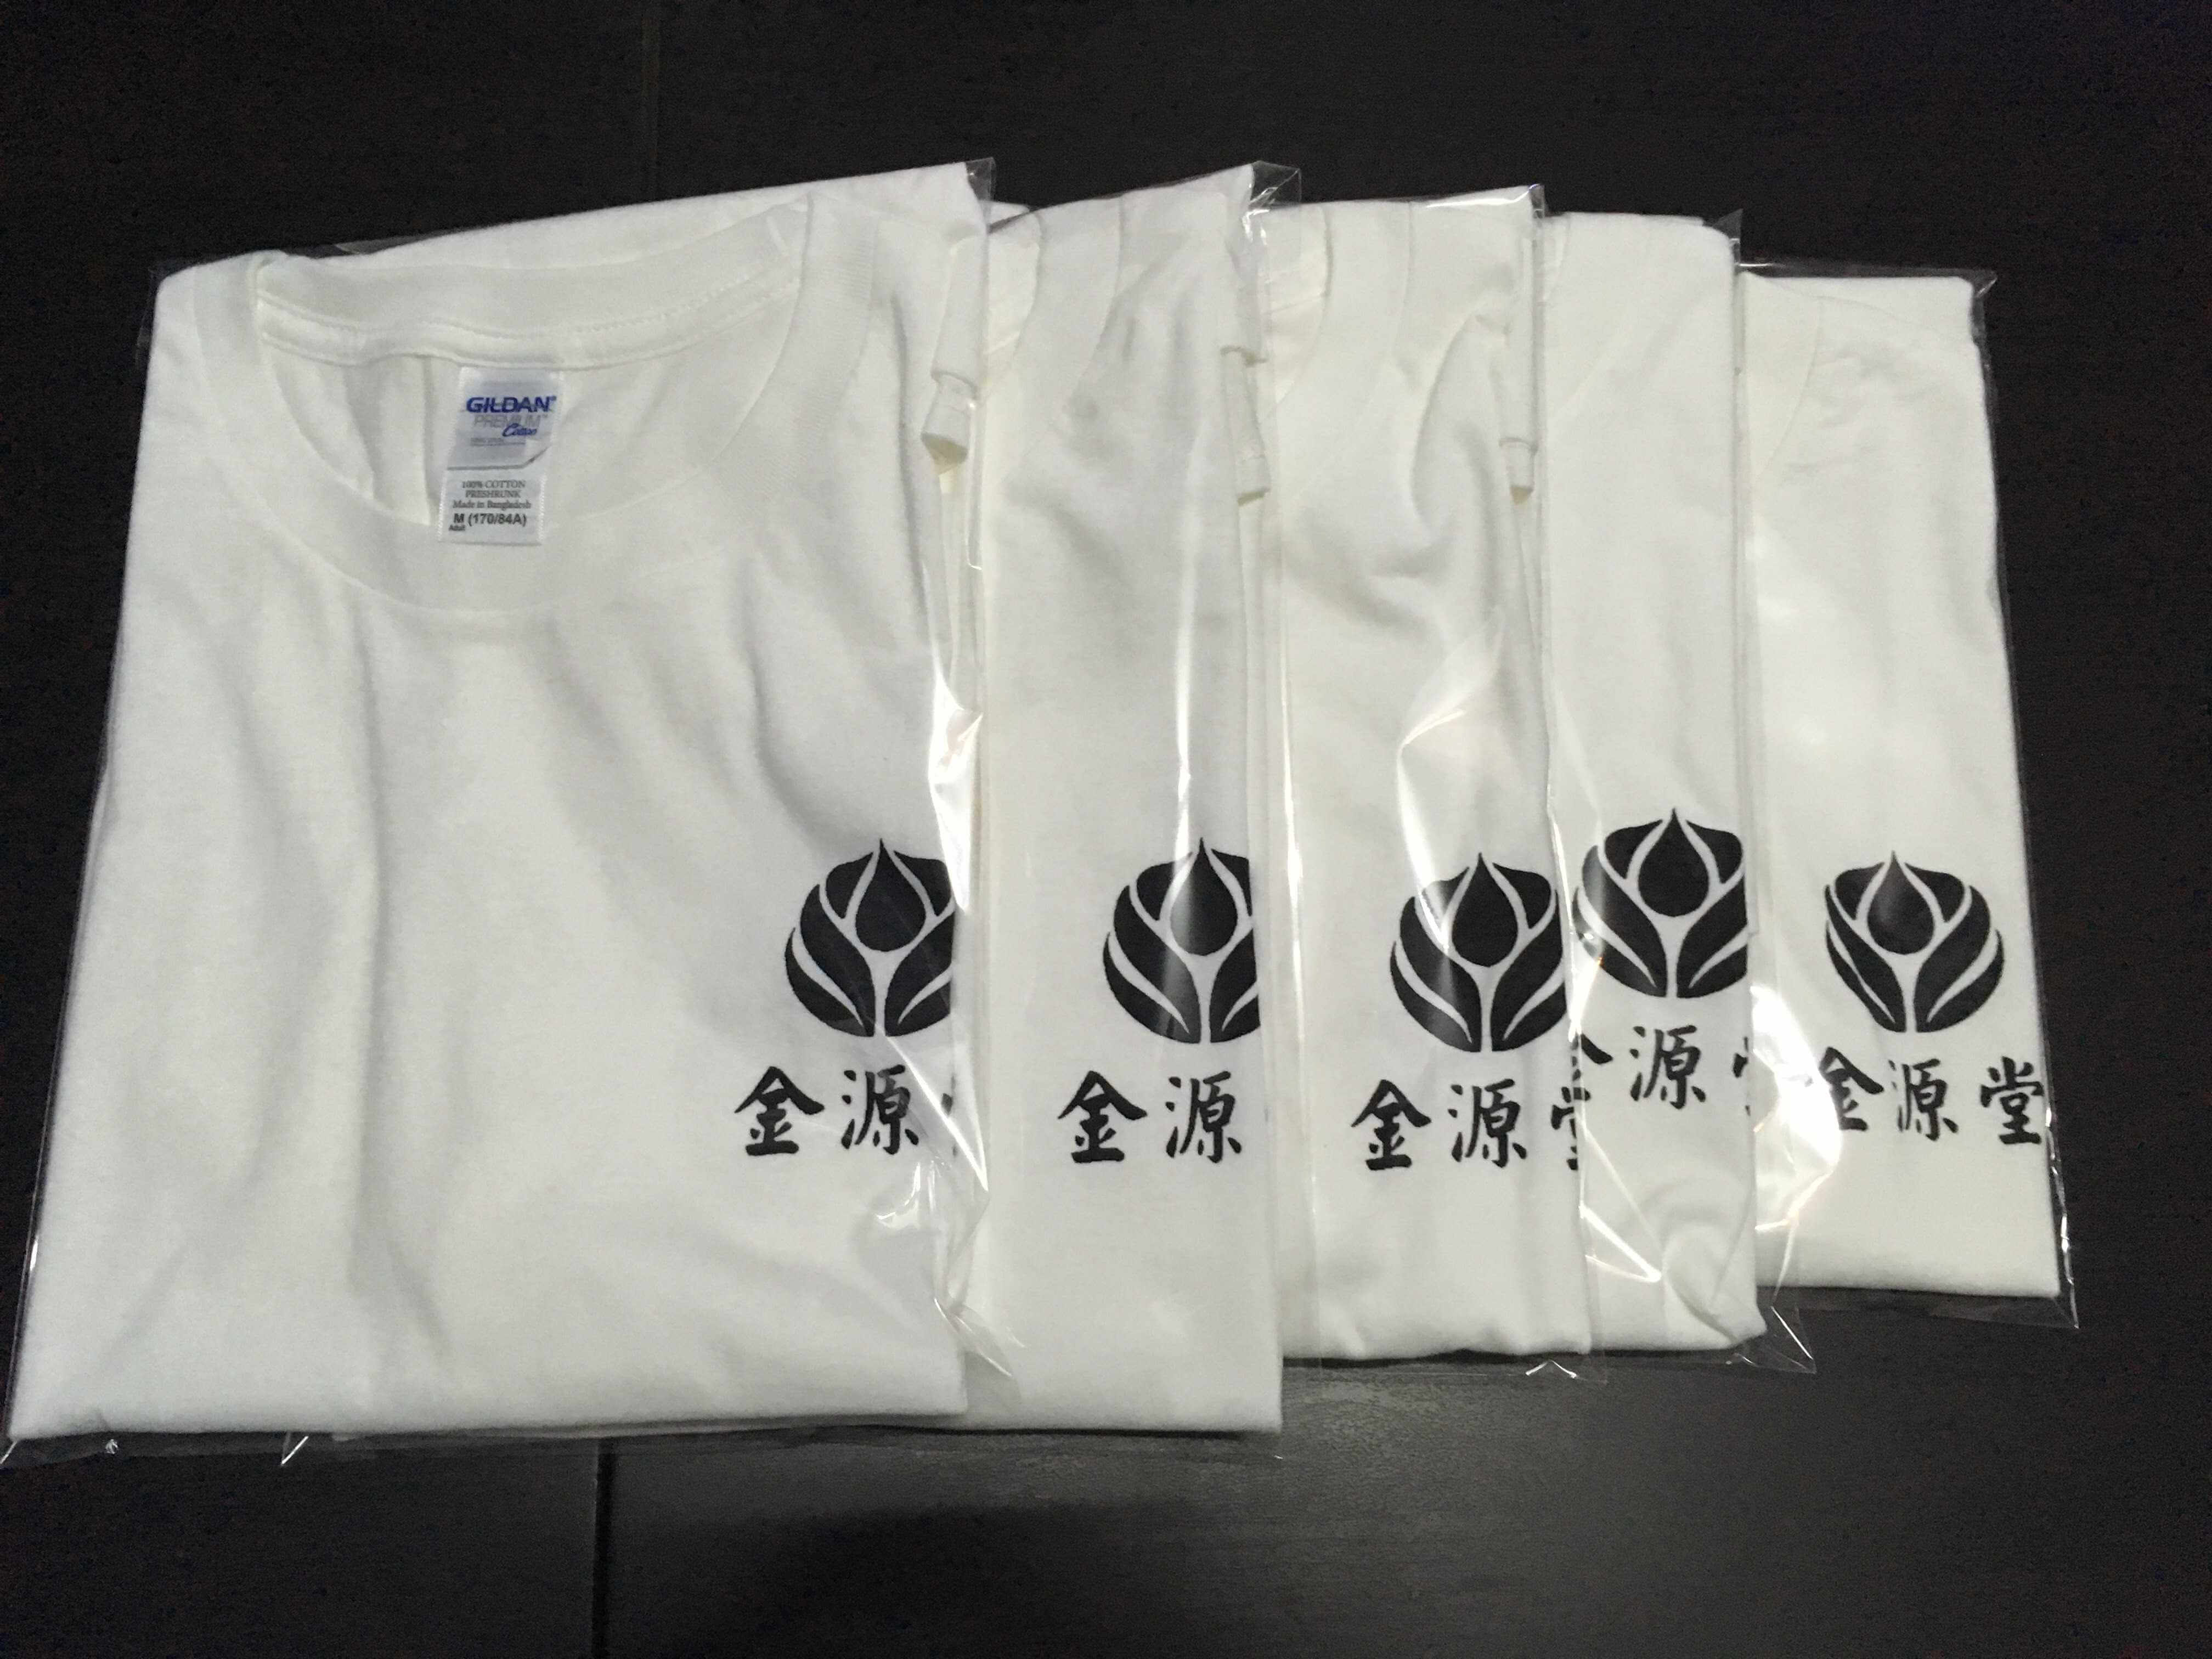 金源堂T恤的第2張圖(客製化公司制服、班服製作、團體服製作等示意或作品圖)